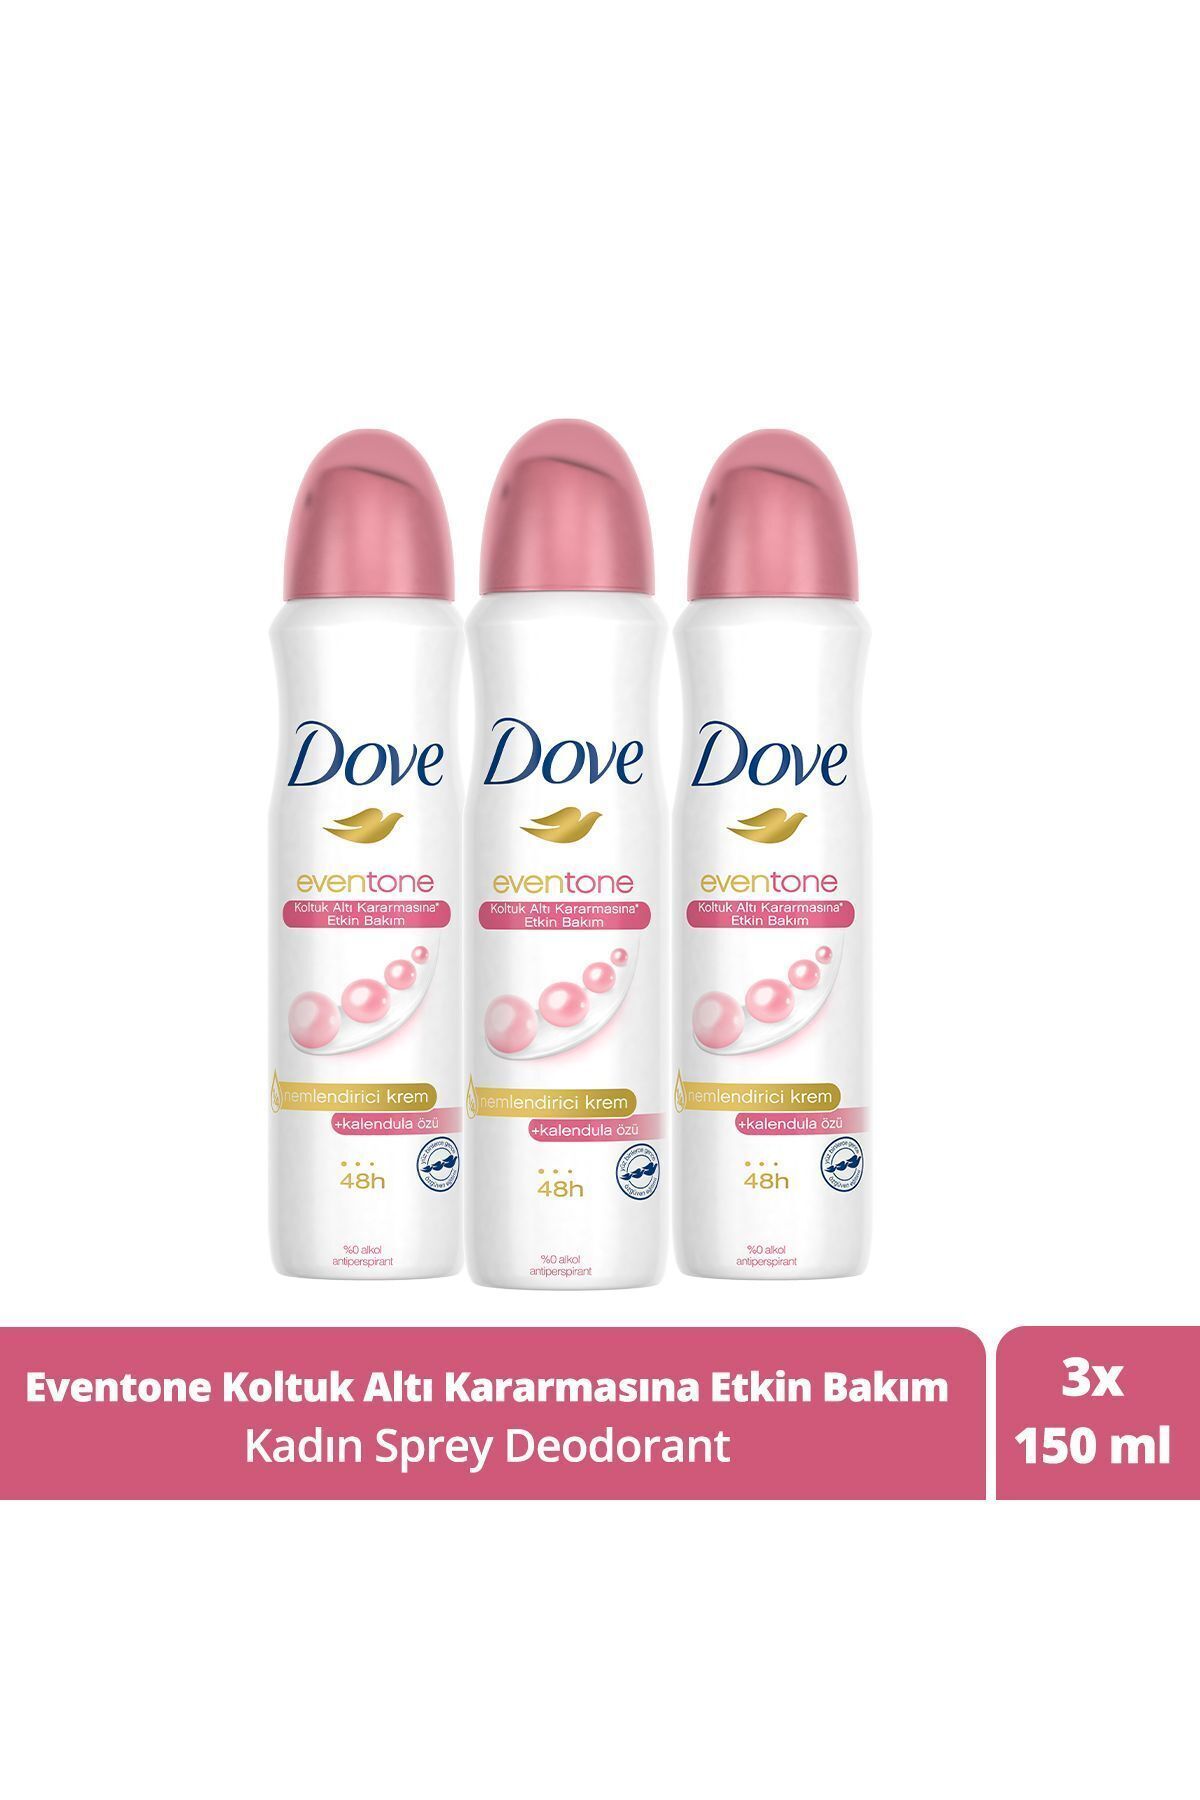 Dove Kadın Sprey Deodorant Eventone 1/4 Nemlendirici Krem Etkili Kalendula Özü 150 ml X3 Adet